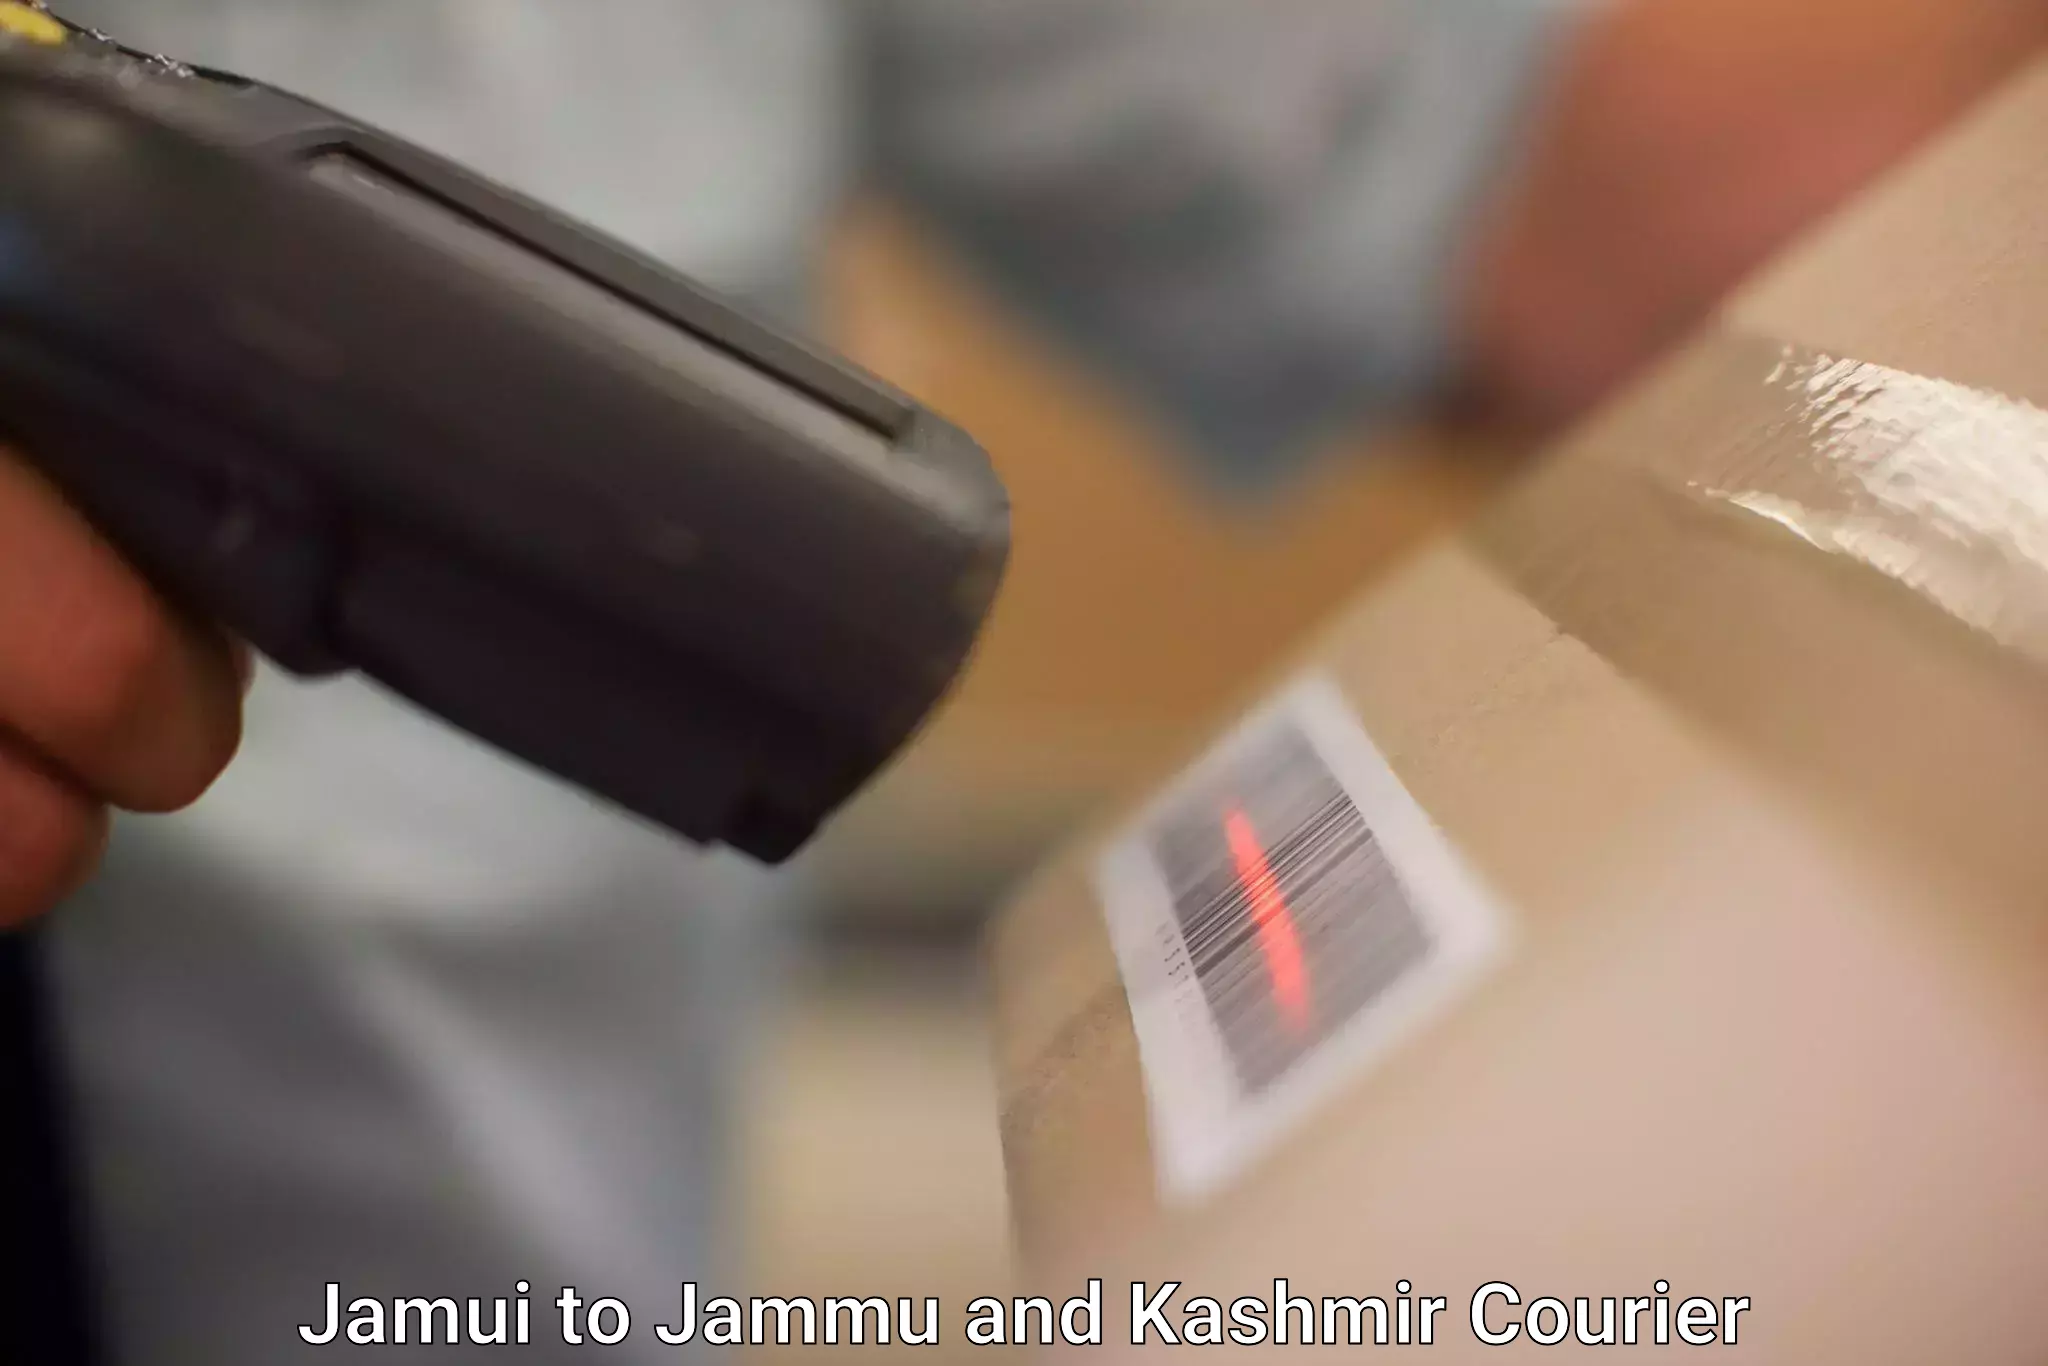 Express package handling Jamui to Kulgam